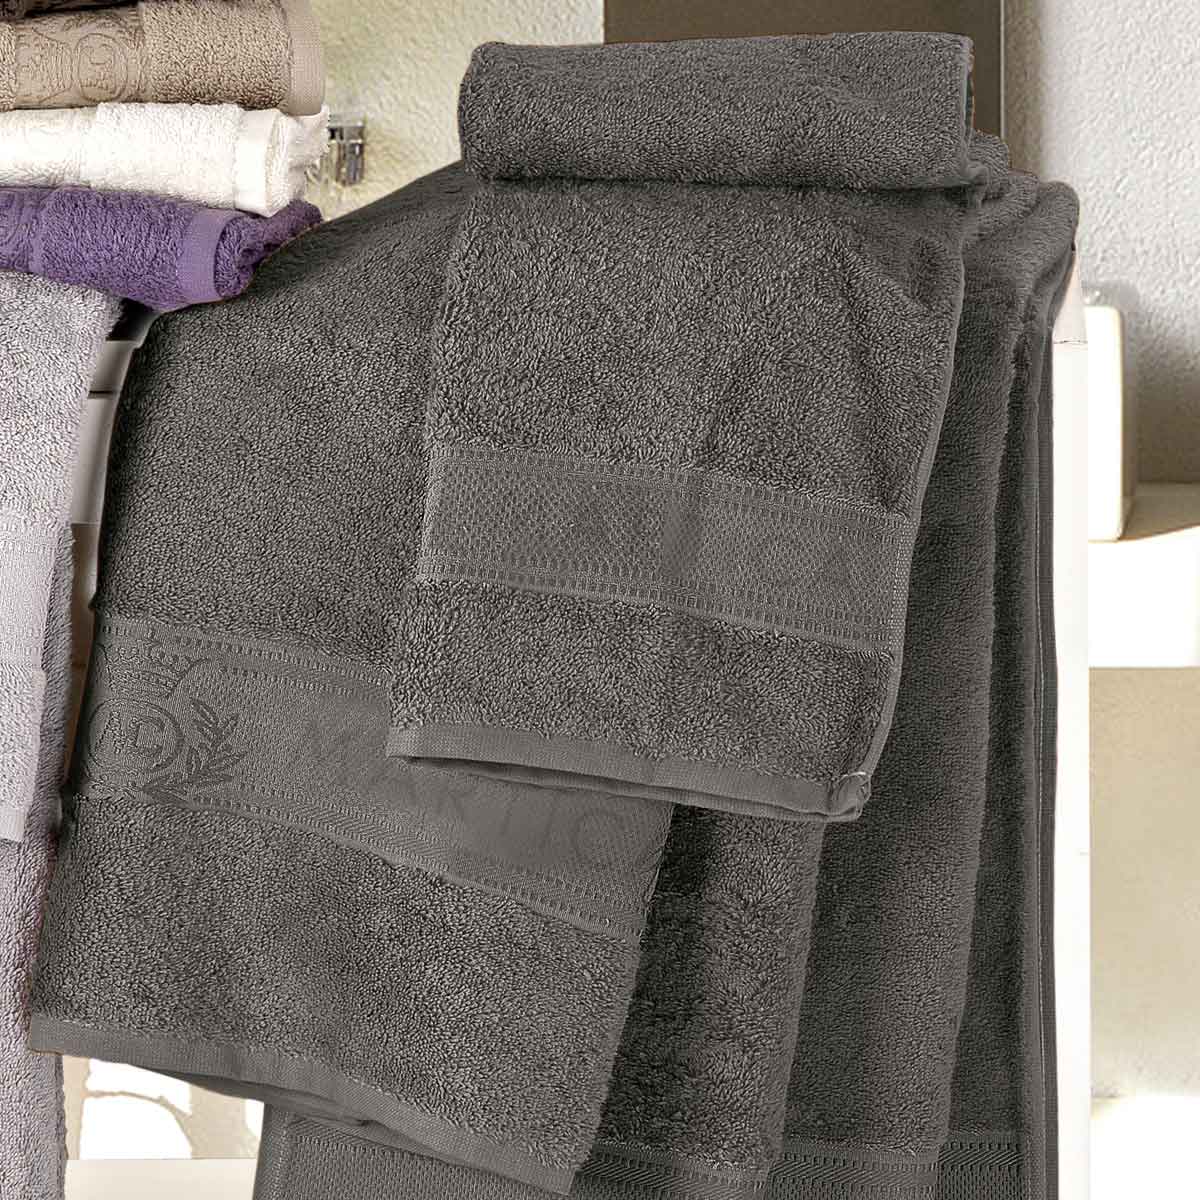 Coppia asciugamani da bagno in spugna di colore nero - Idrospugna